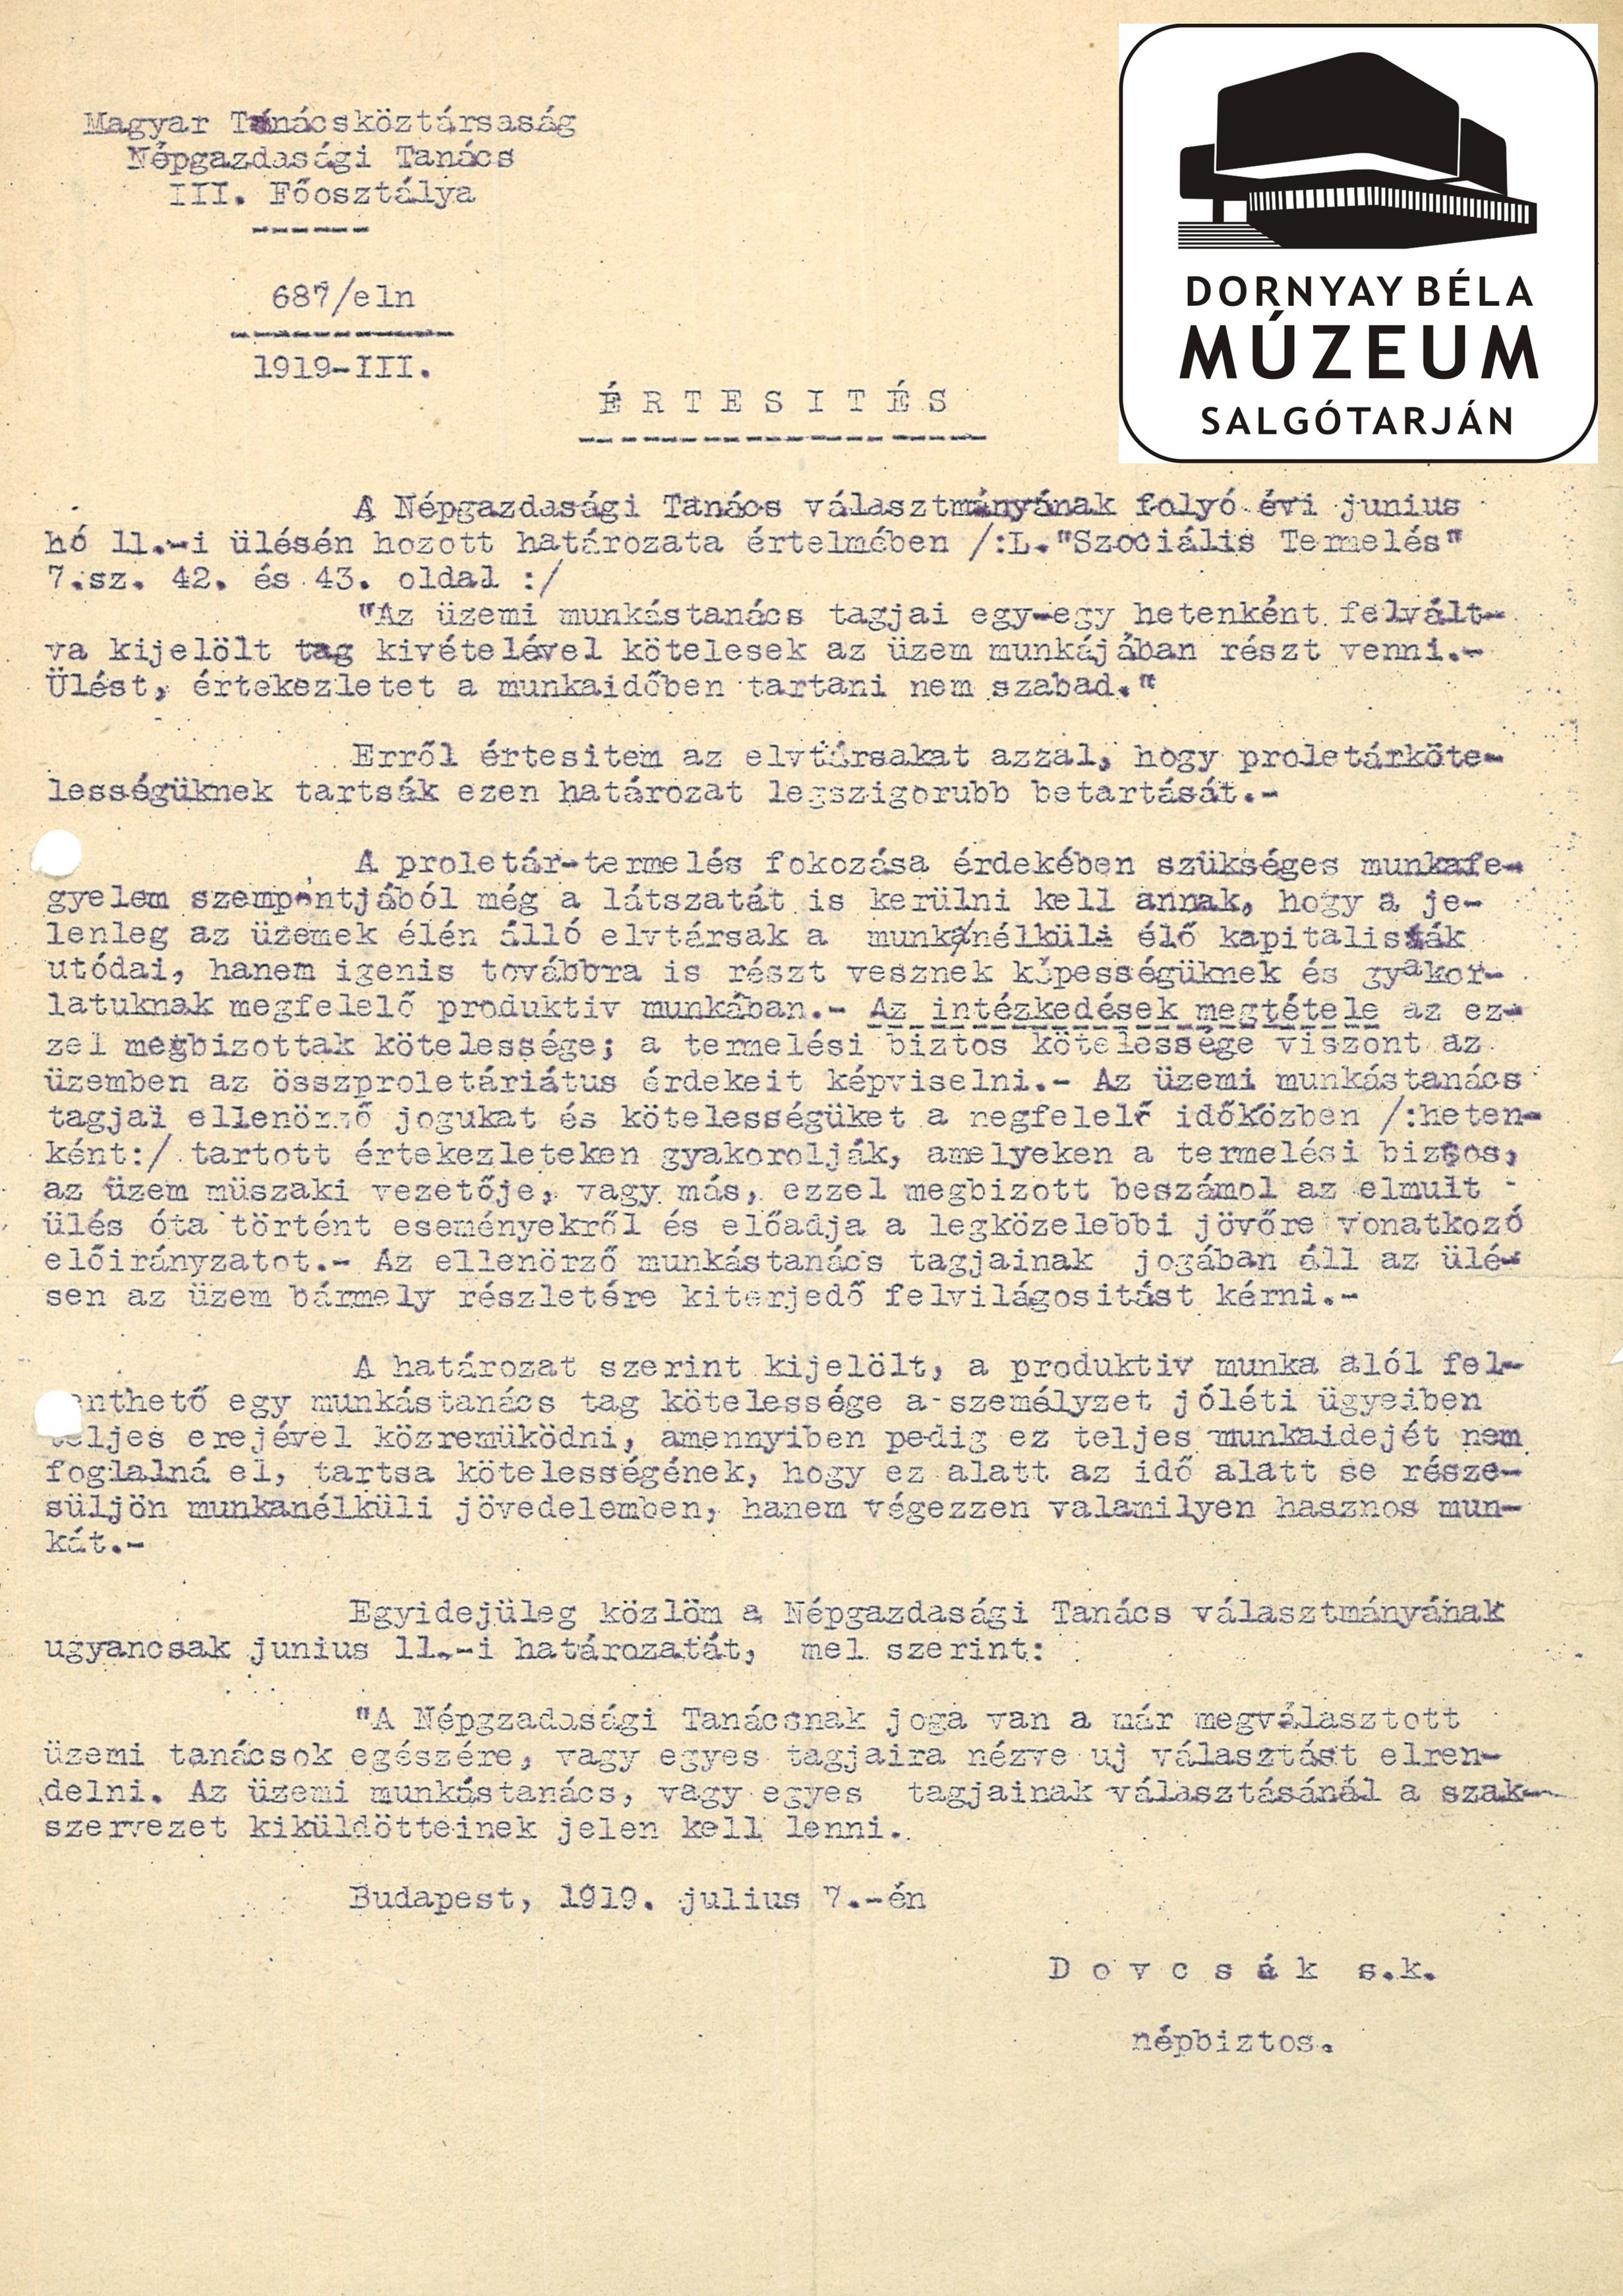 A Szoc. Term. Népbiztosságának értesítése az üzemi munkástanács tagjainak munkaidő beosztásáról (Dornyay Béla Múzeum CC BY-NC-SA)